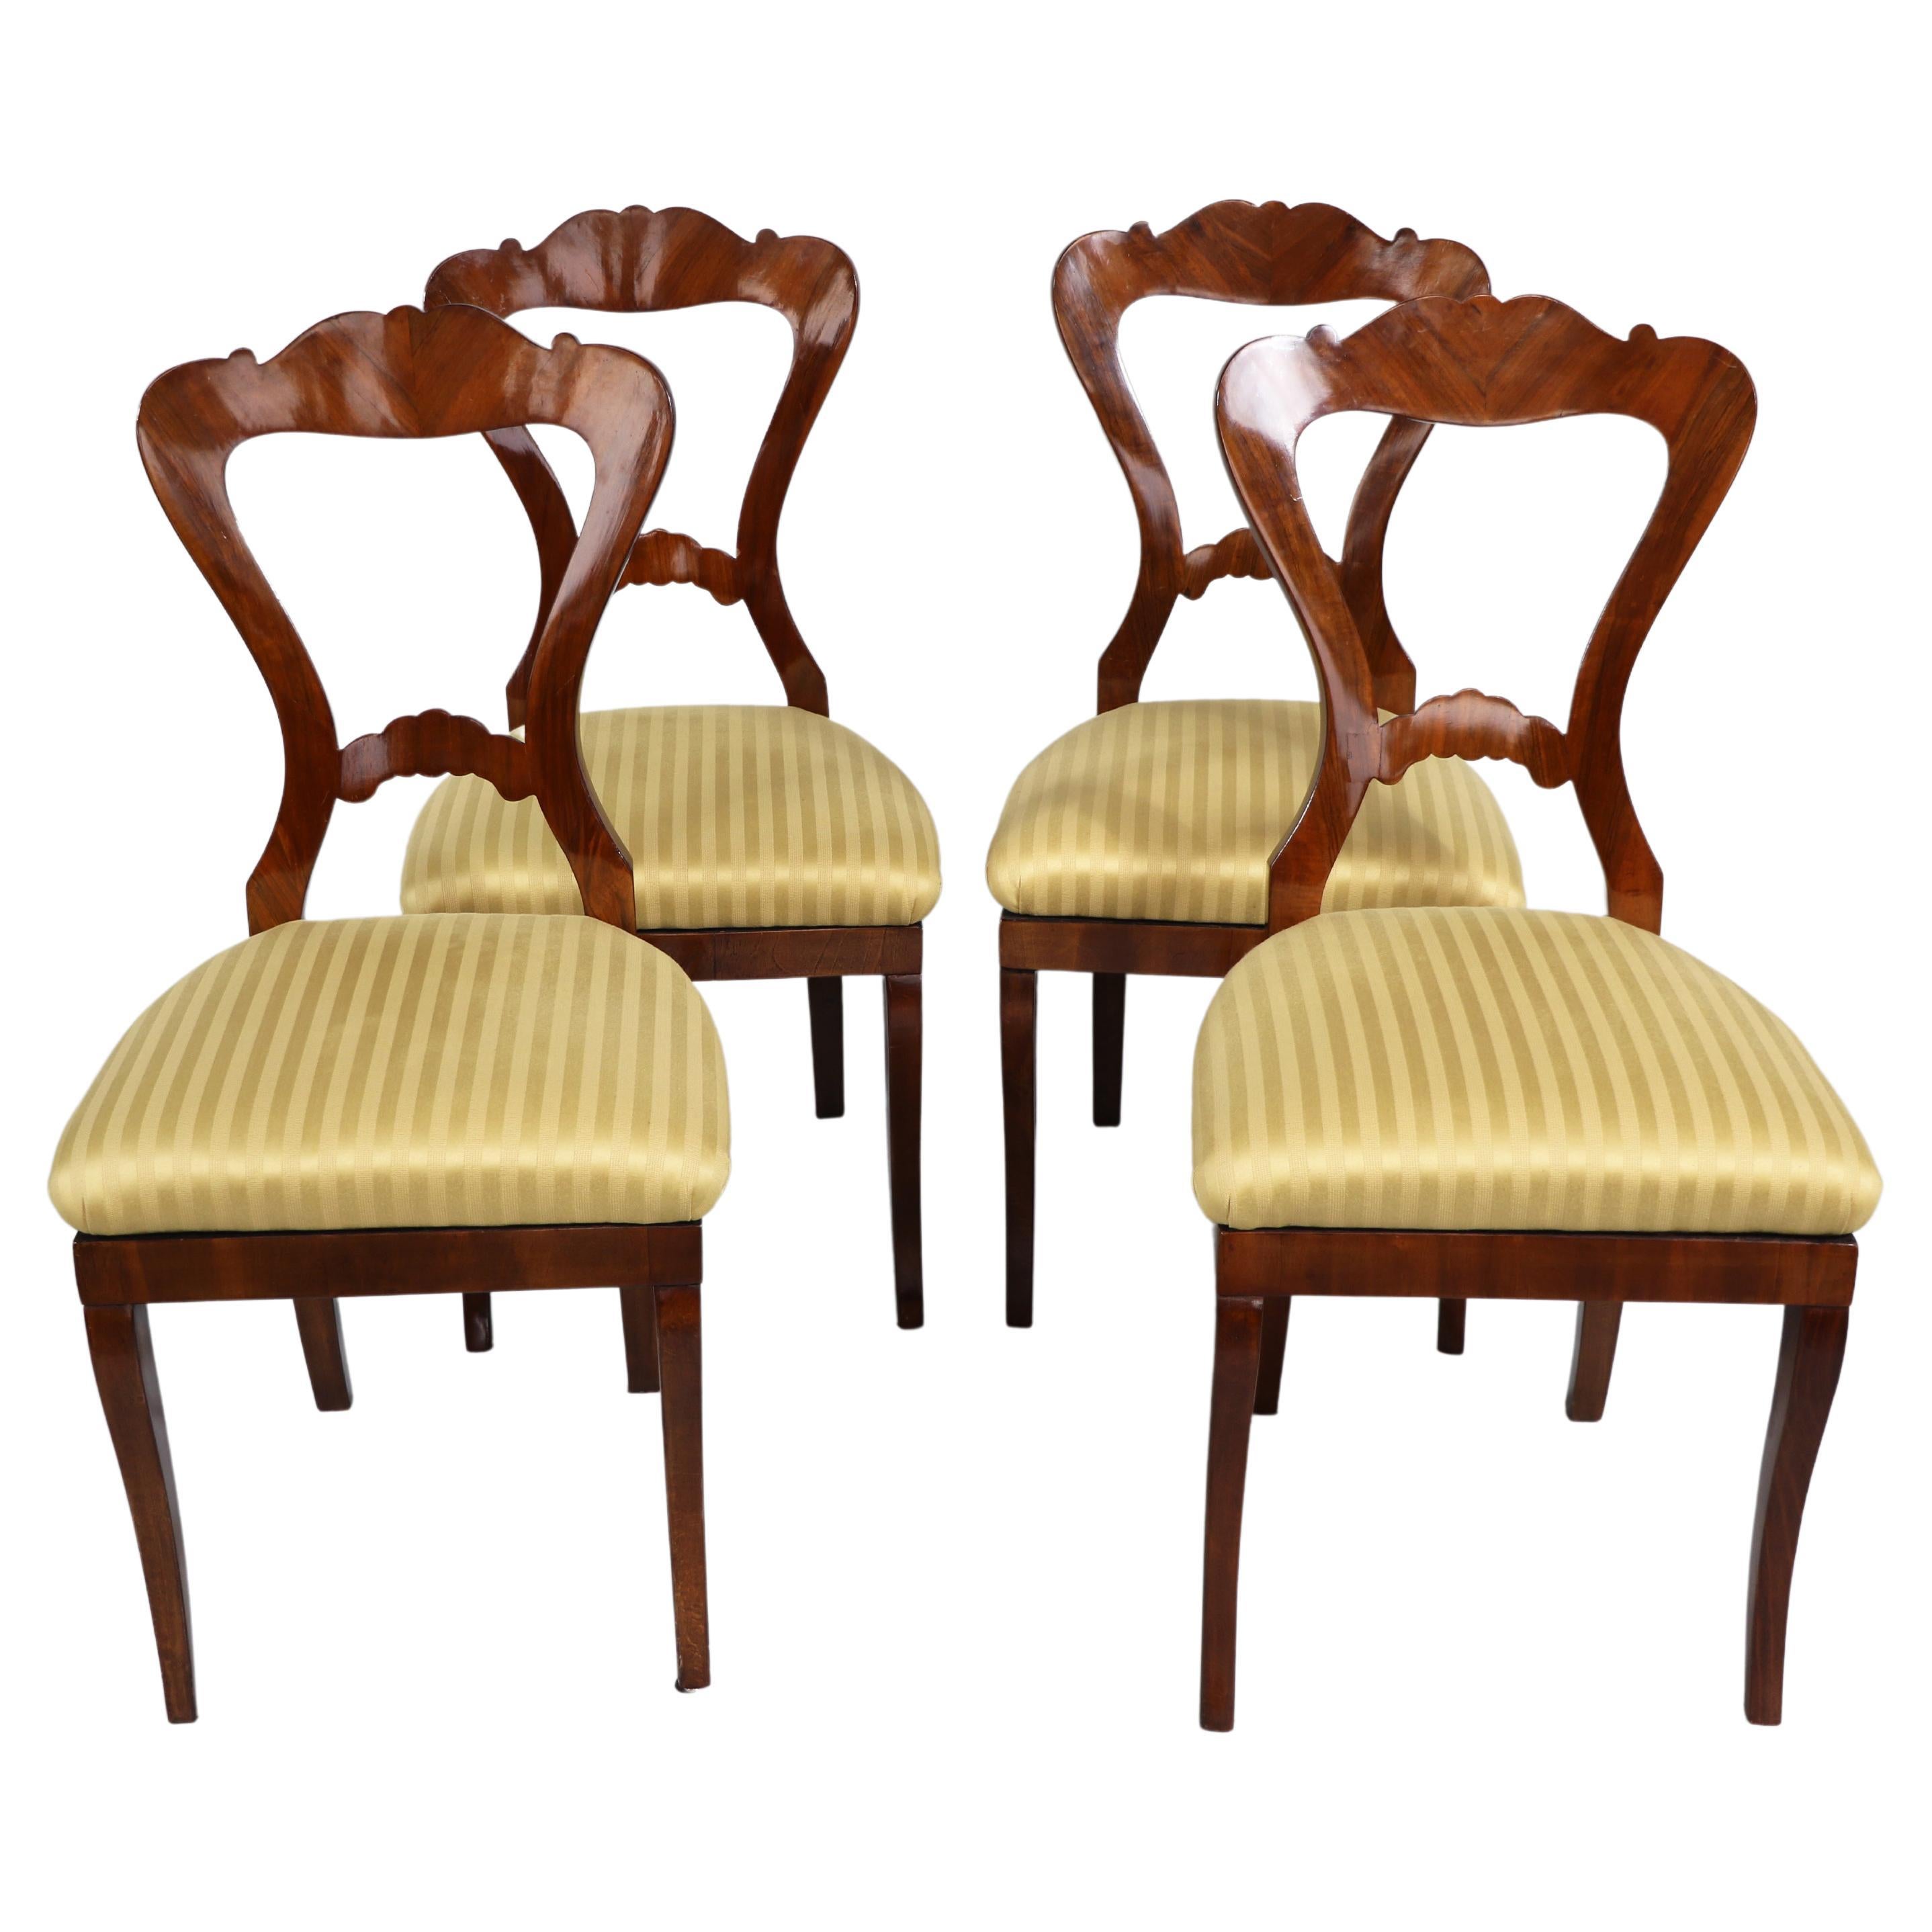 Ensemble de quatre chaises Biedermeier en noyer du 19e siècle. Vienne, vers 1825.